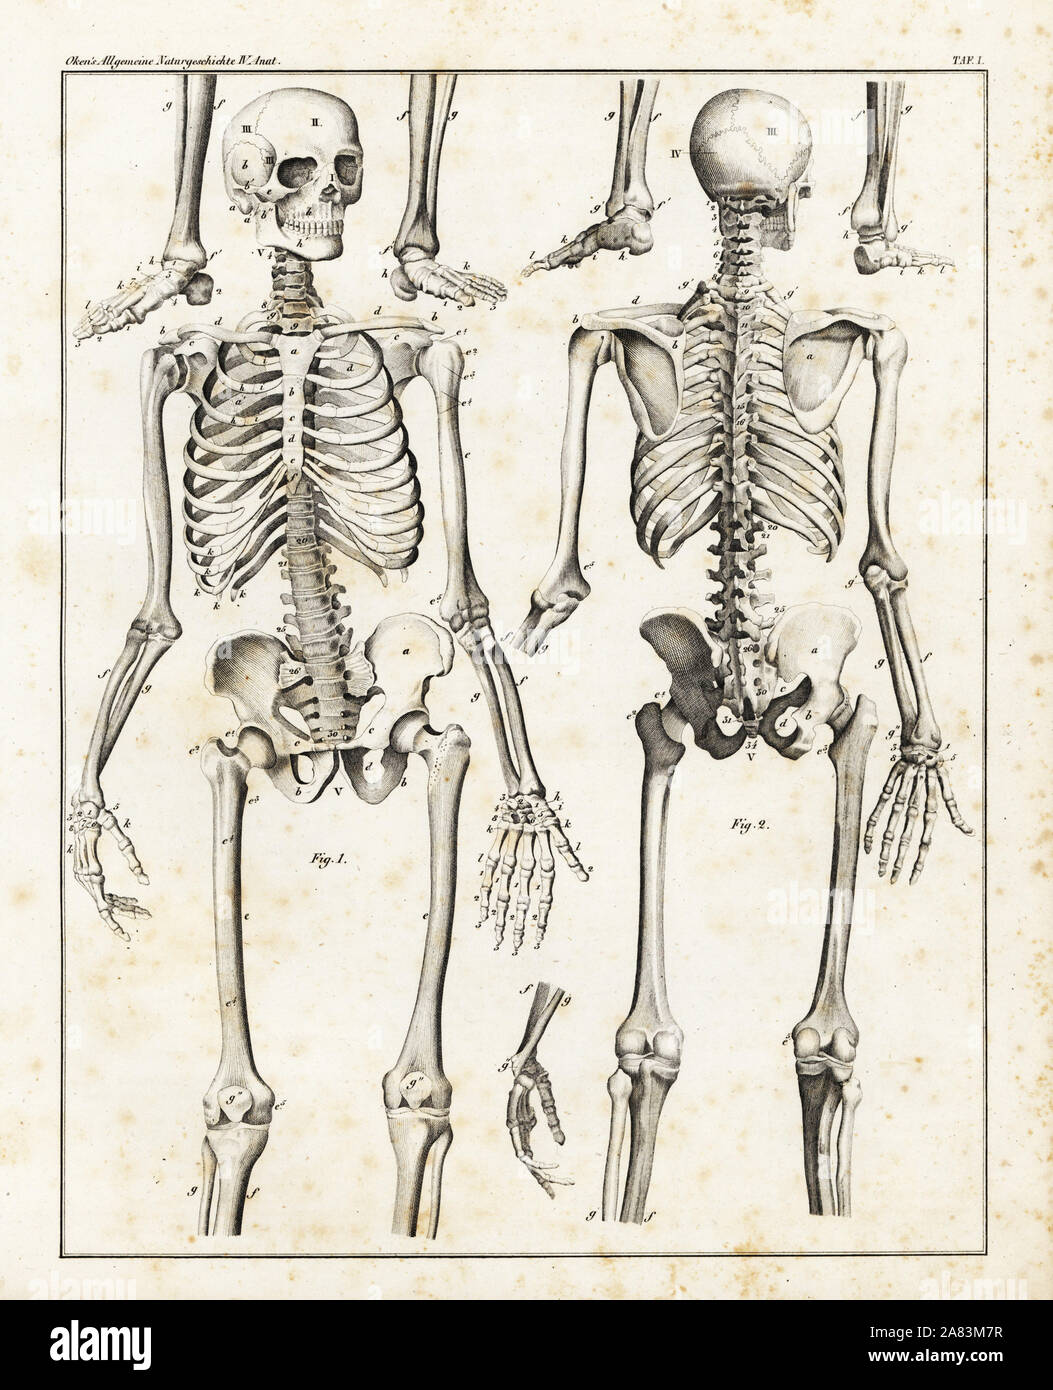 Anatomie des menschlichen Skeletts. Lithographie von Universal natürlichen von Lorenz oken Geschichte, Allgemeine Naturgeschichte Fell alle Stande, Stuttgart, 1839. Stockfoto